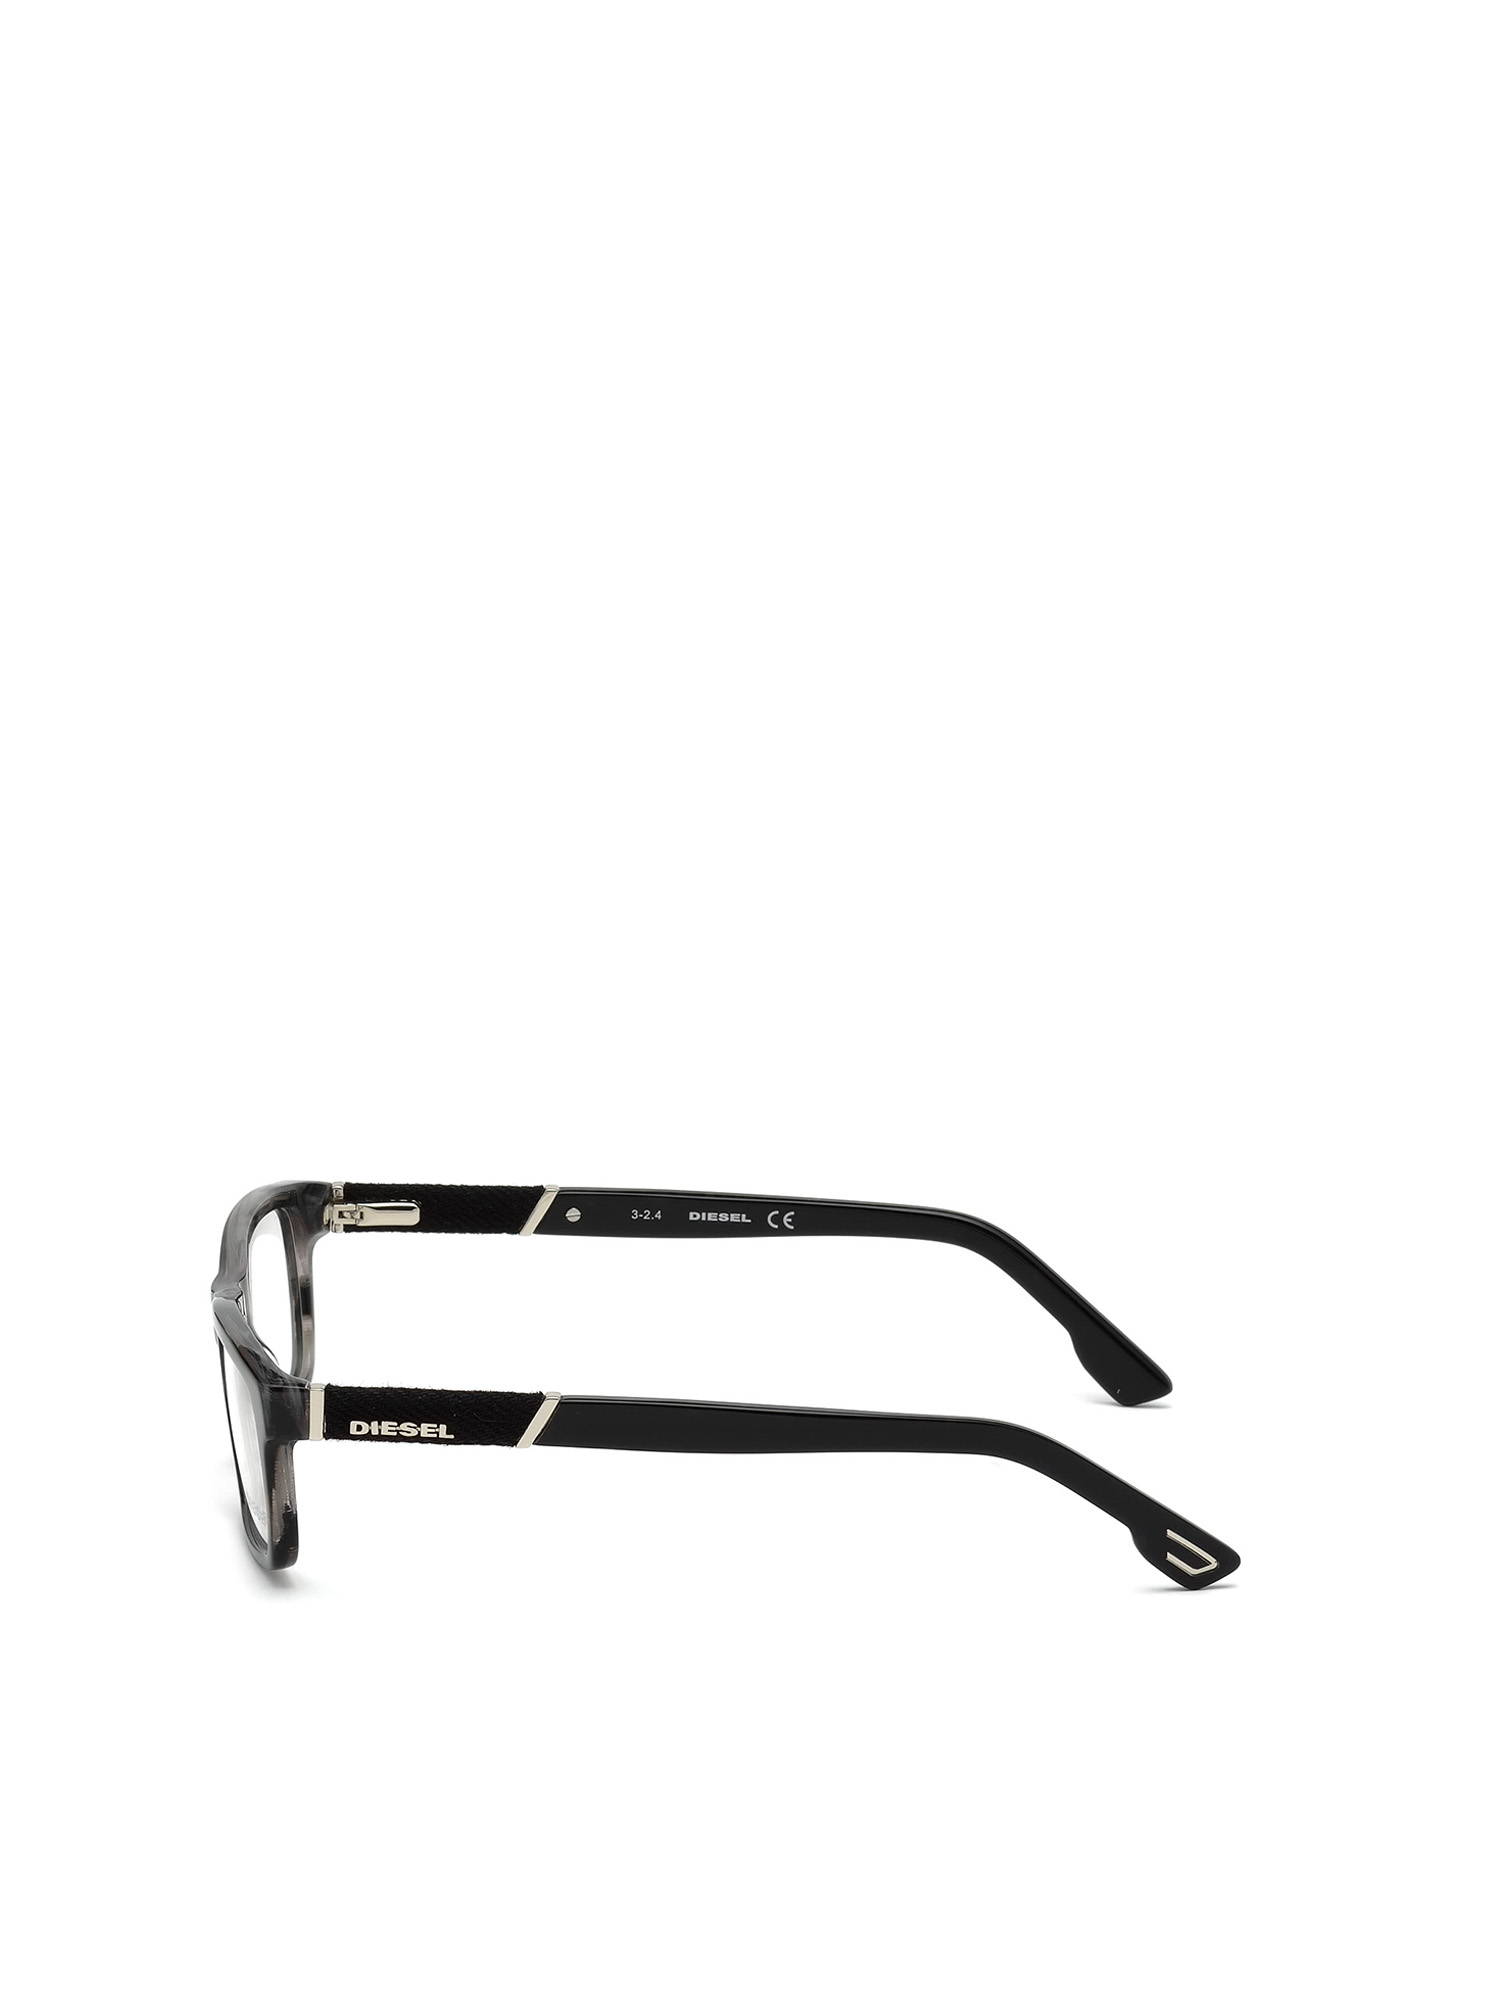 025 tot Diesel leesbril 55mm mat bruin koperblauw 3.50 Dl5133 050 Accessoires Zonnebrillen & Eyewear Leesbrillen 